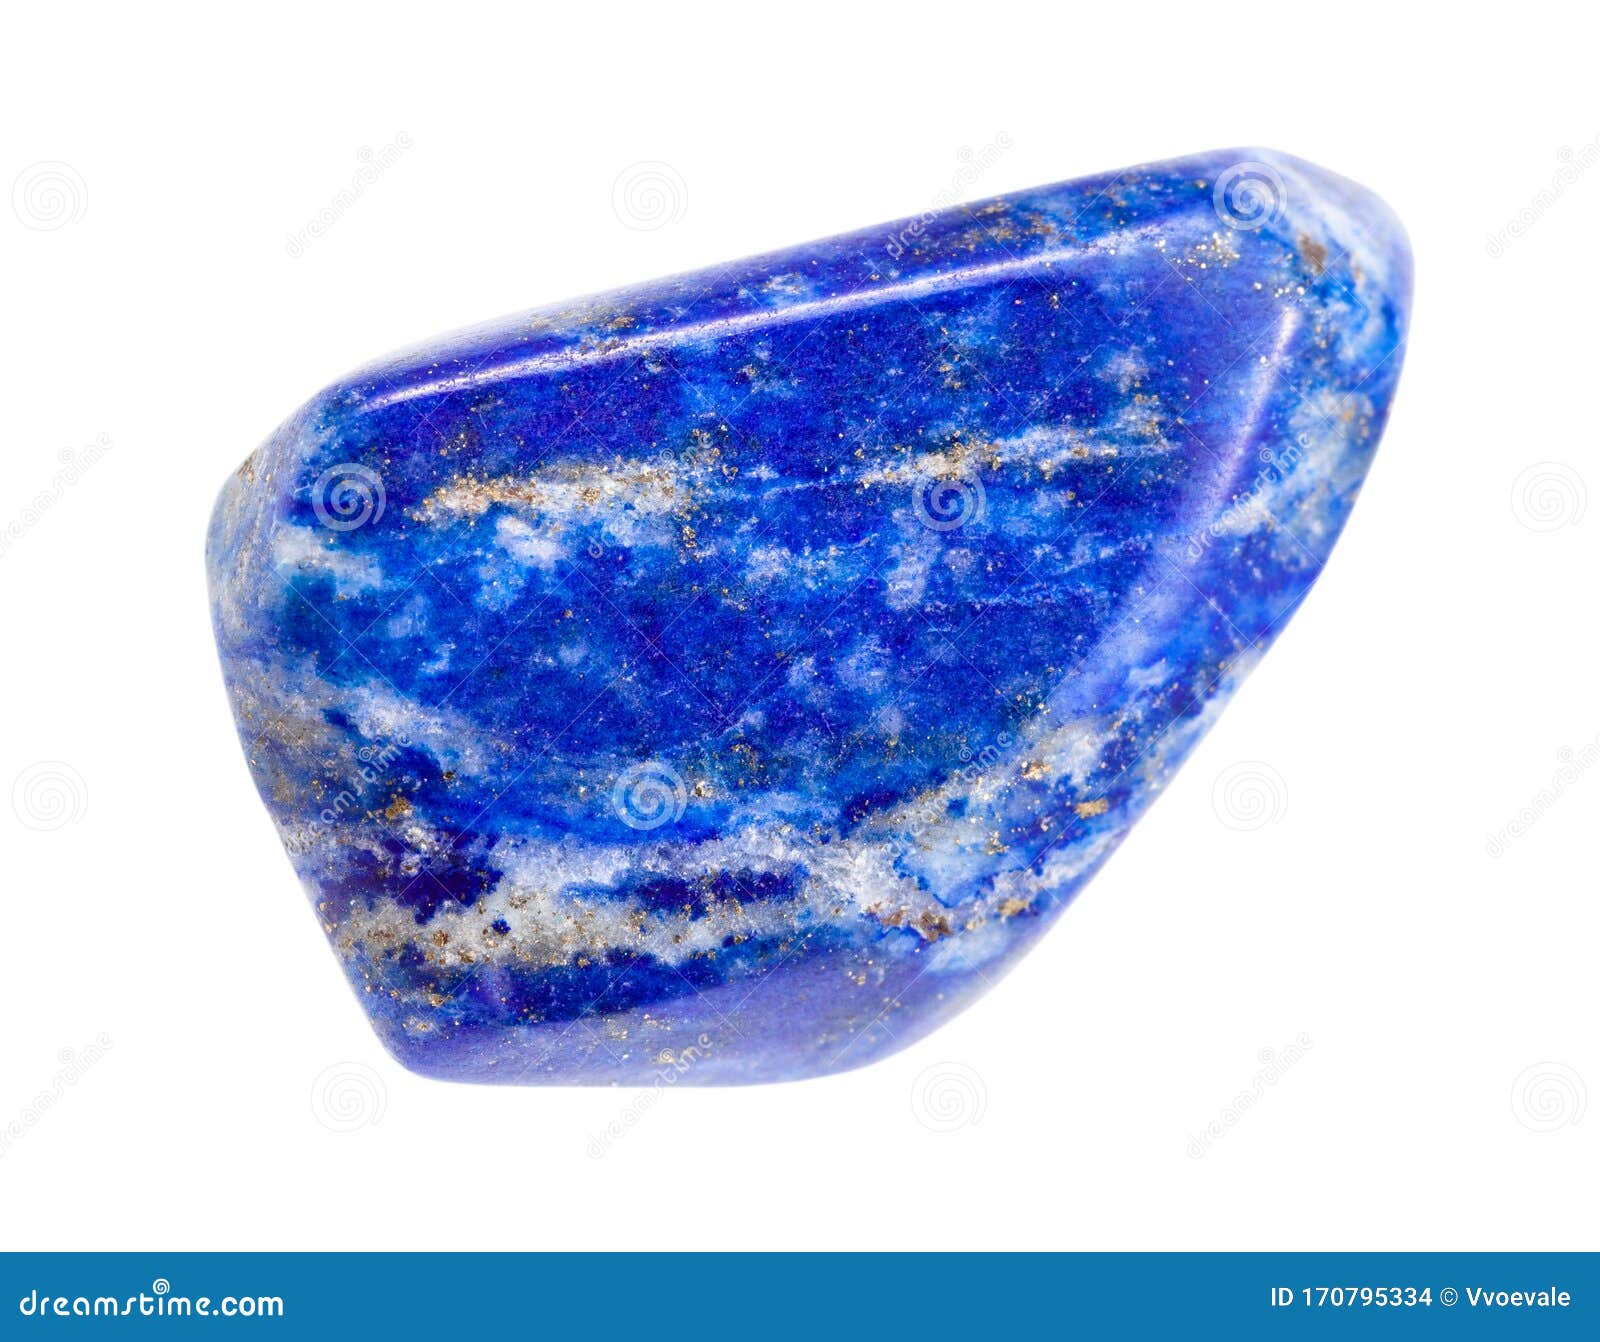 polished lapis lazuli (lazurite) gem 